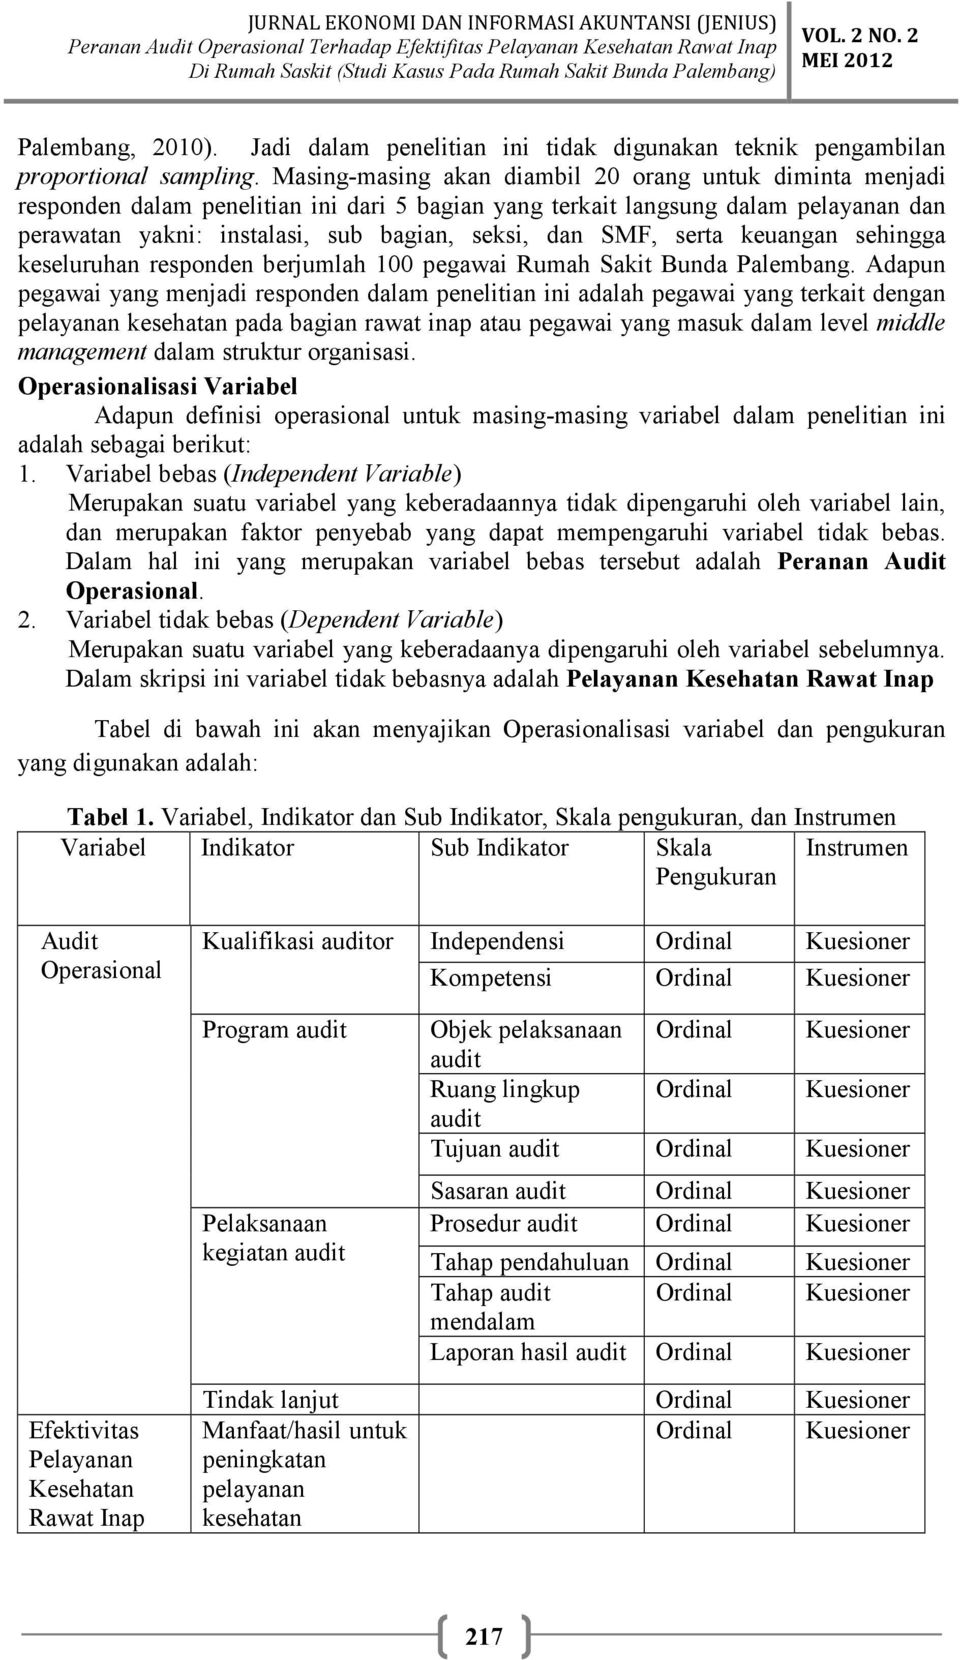 Peranan Audit Operasional Terhadap Efektivitas Pelayanan Kesehatan Rawat Inap Di Rumah Sakit Studi Kasus Pada Rumah Sakit Bunda Palembang Pdf Free Download